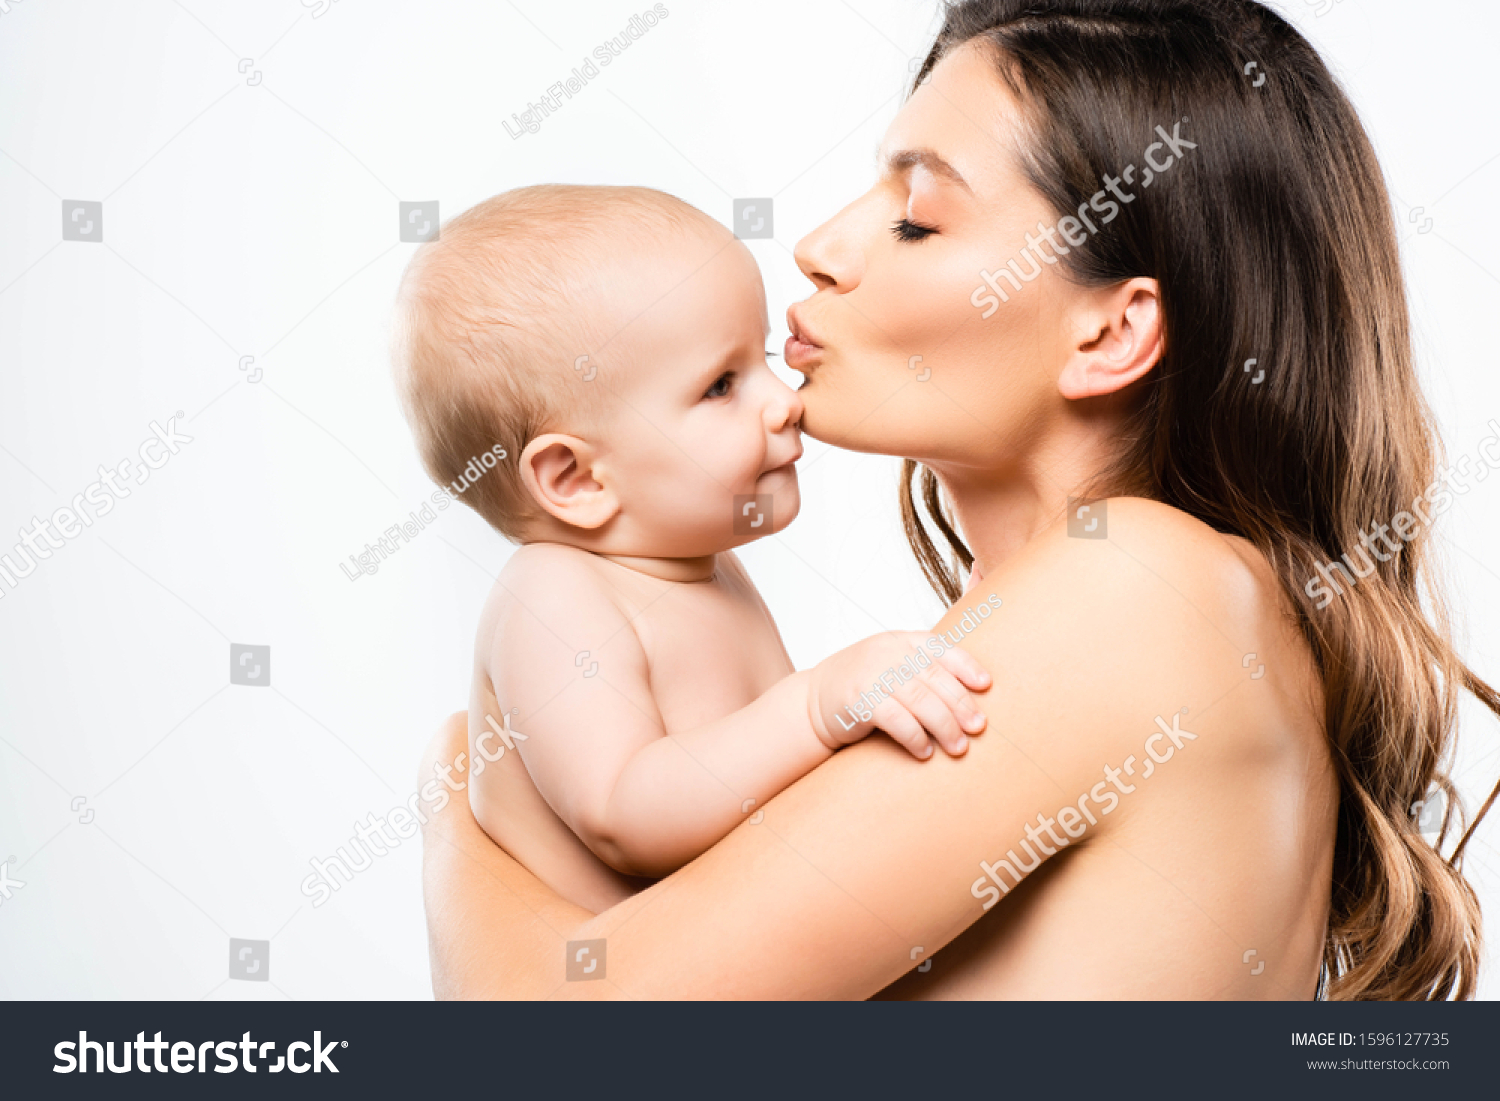 фото голая мама и ребенок фото 3